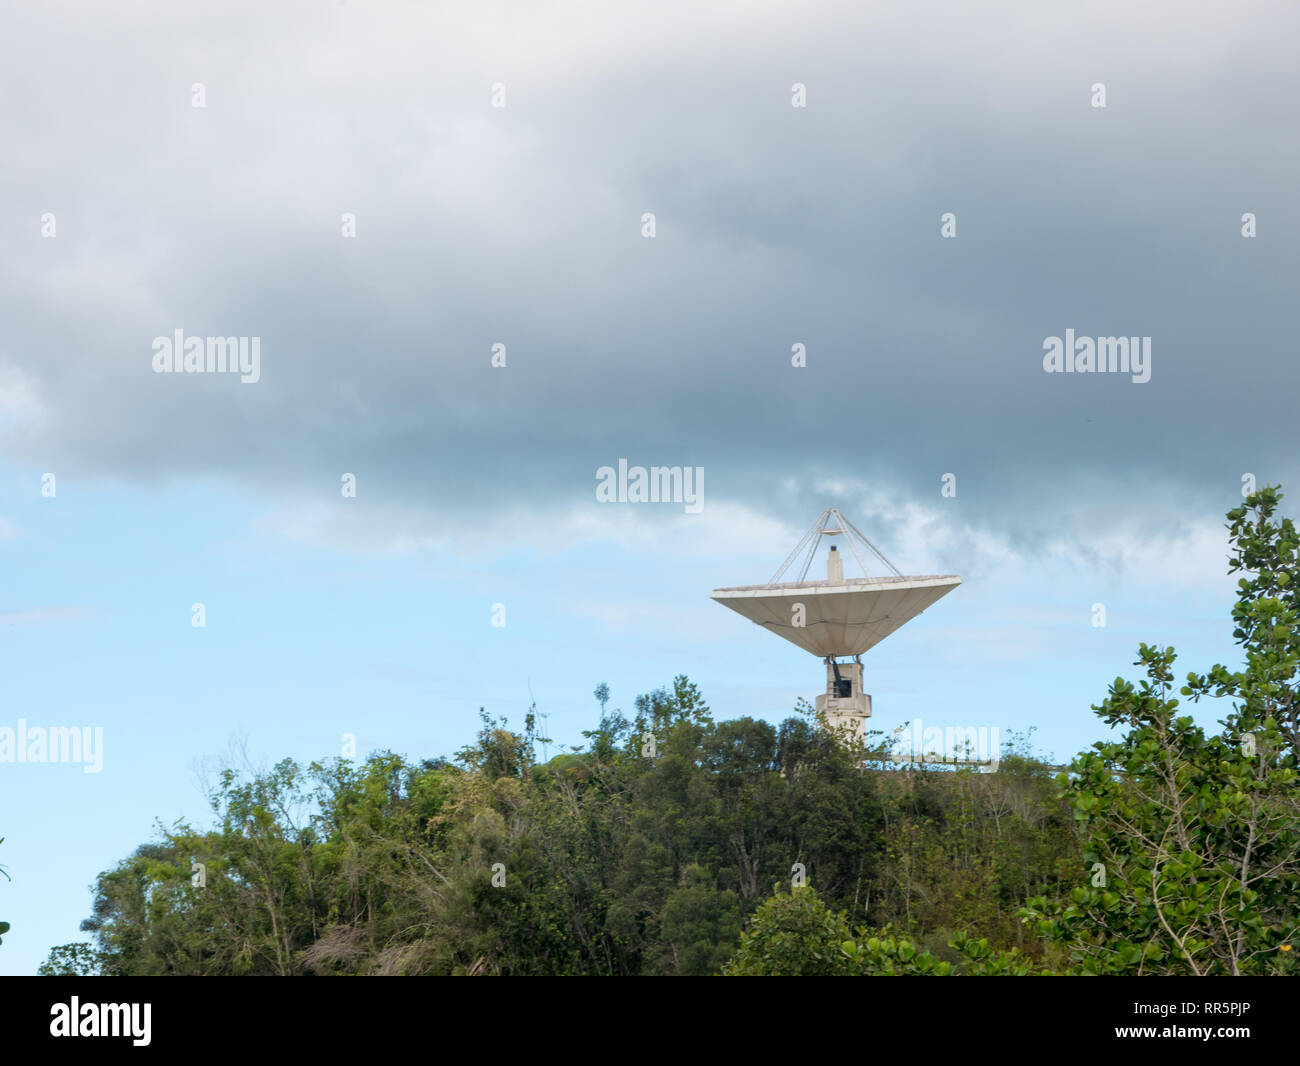 Arecibo, Puerto Rico. January 2019. : The Arecibo Observatory radio telescope in the hills of Arecibo, Puerto Rico. Stock Photo